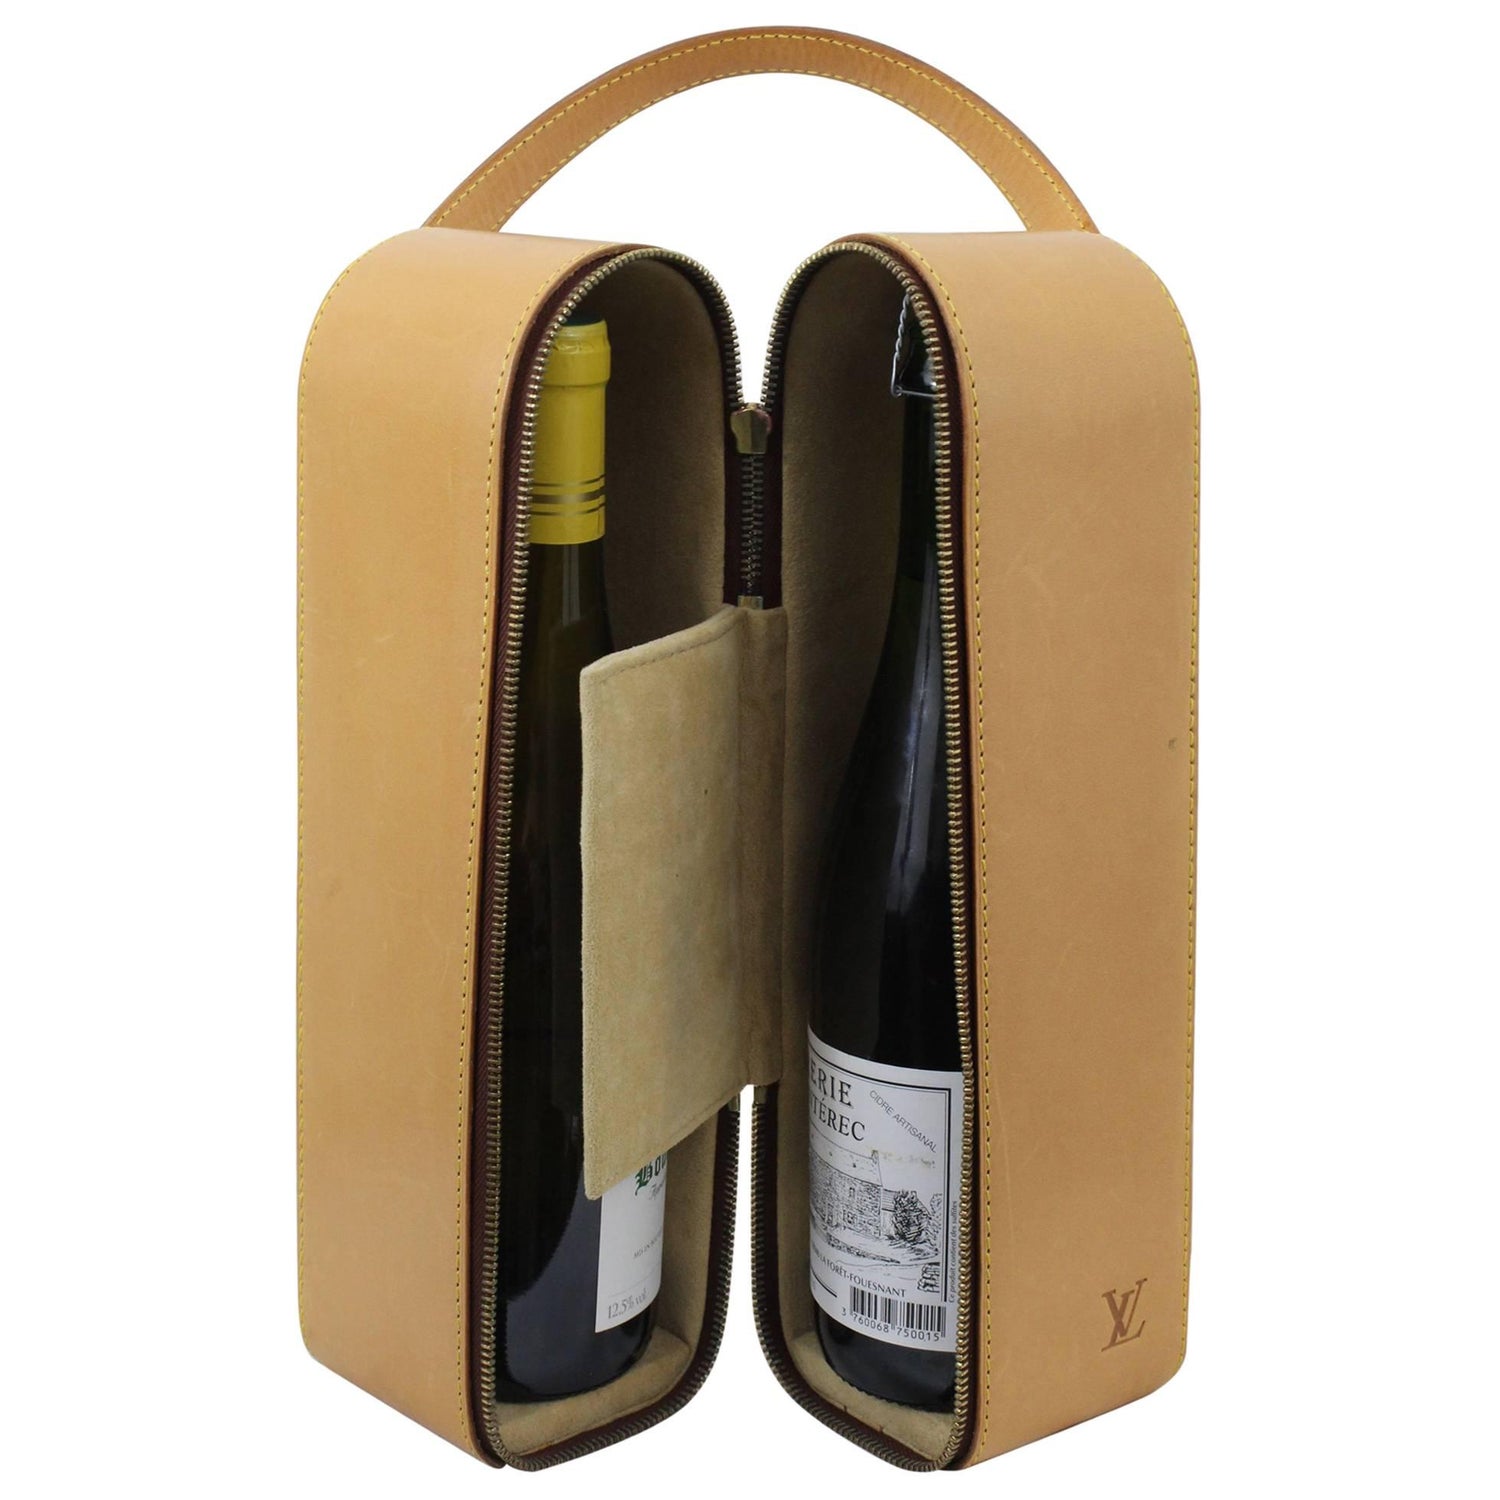 Vintage 1996 Louis Vuitton Natural leather Wine Bottle Case / Bag